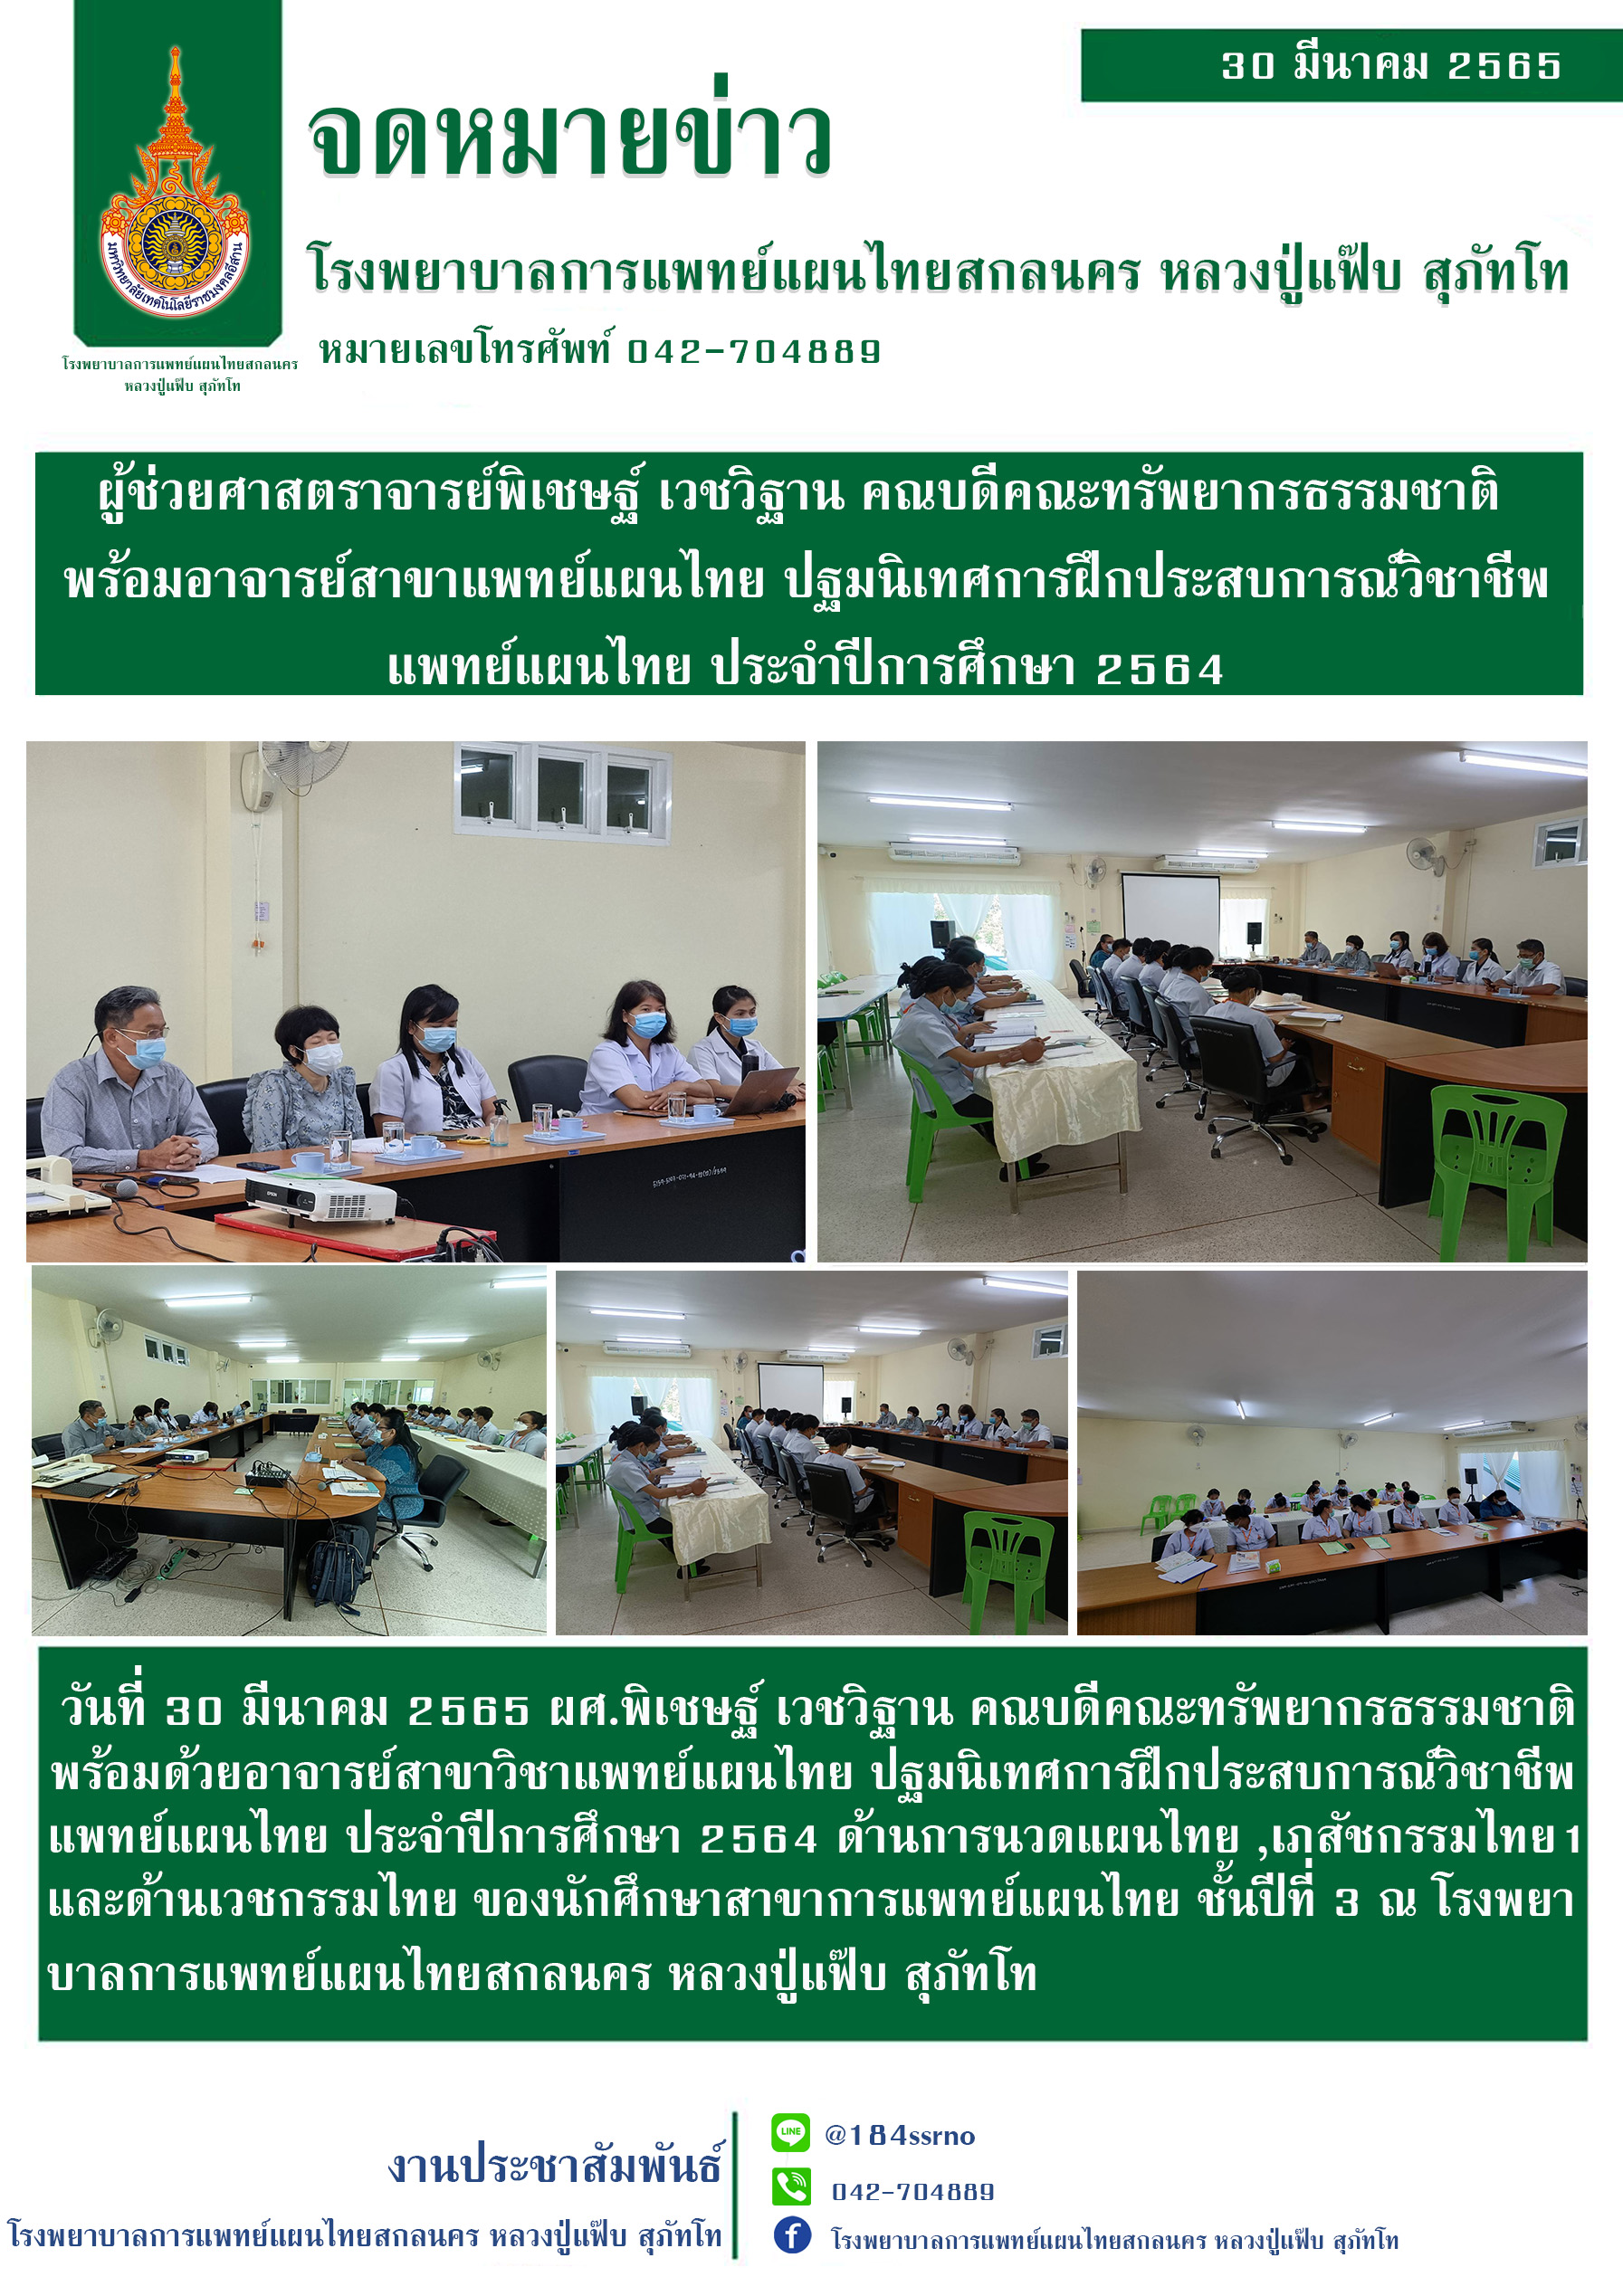 ปฐมนิเทศการฝึกประสบการณ์วิชาชีพแพทย์แผนไทย ประจำปีการศึกษา 2564 ด้านการนวดไทย ด้านเภสัชกรรมไทย 1 และ ด้านเวชกรรมไทย